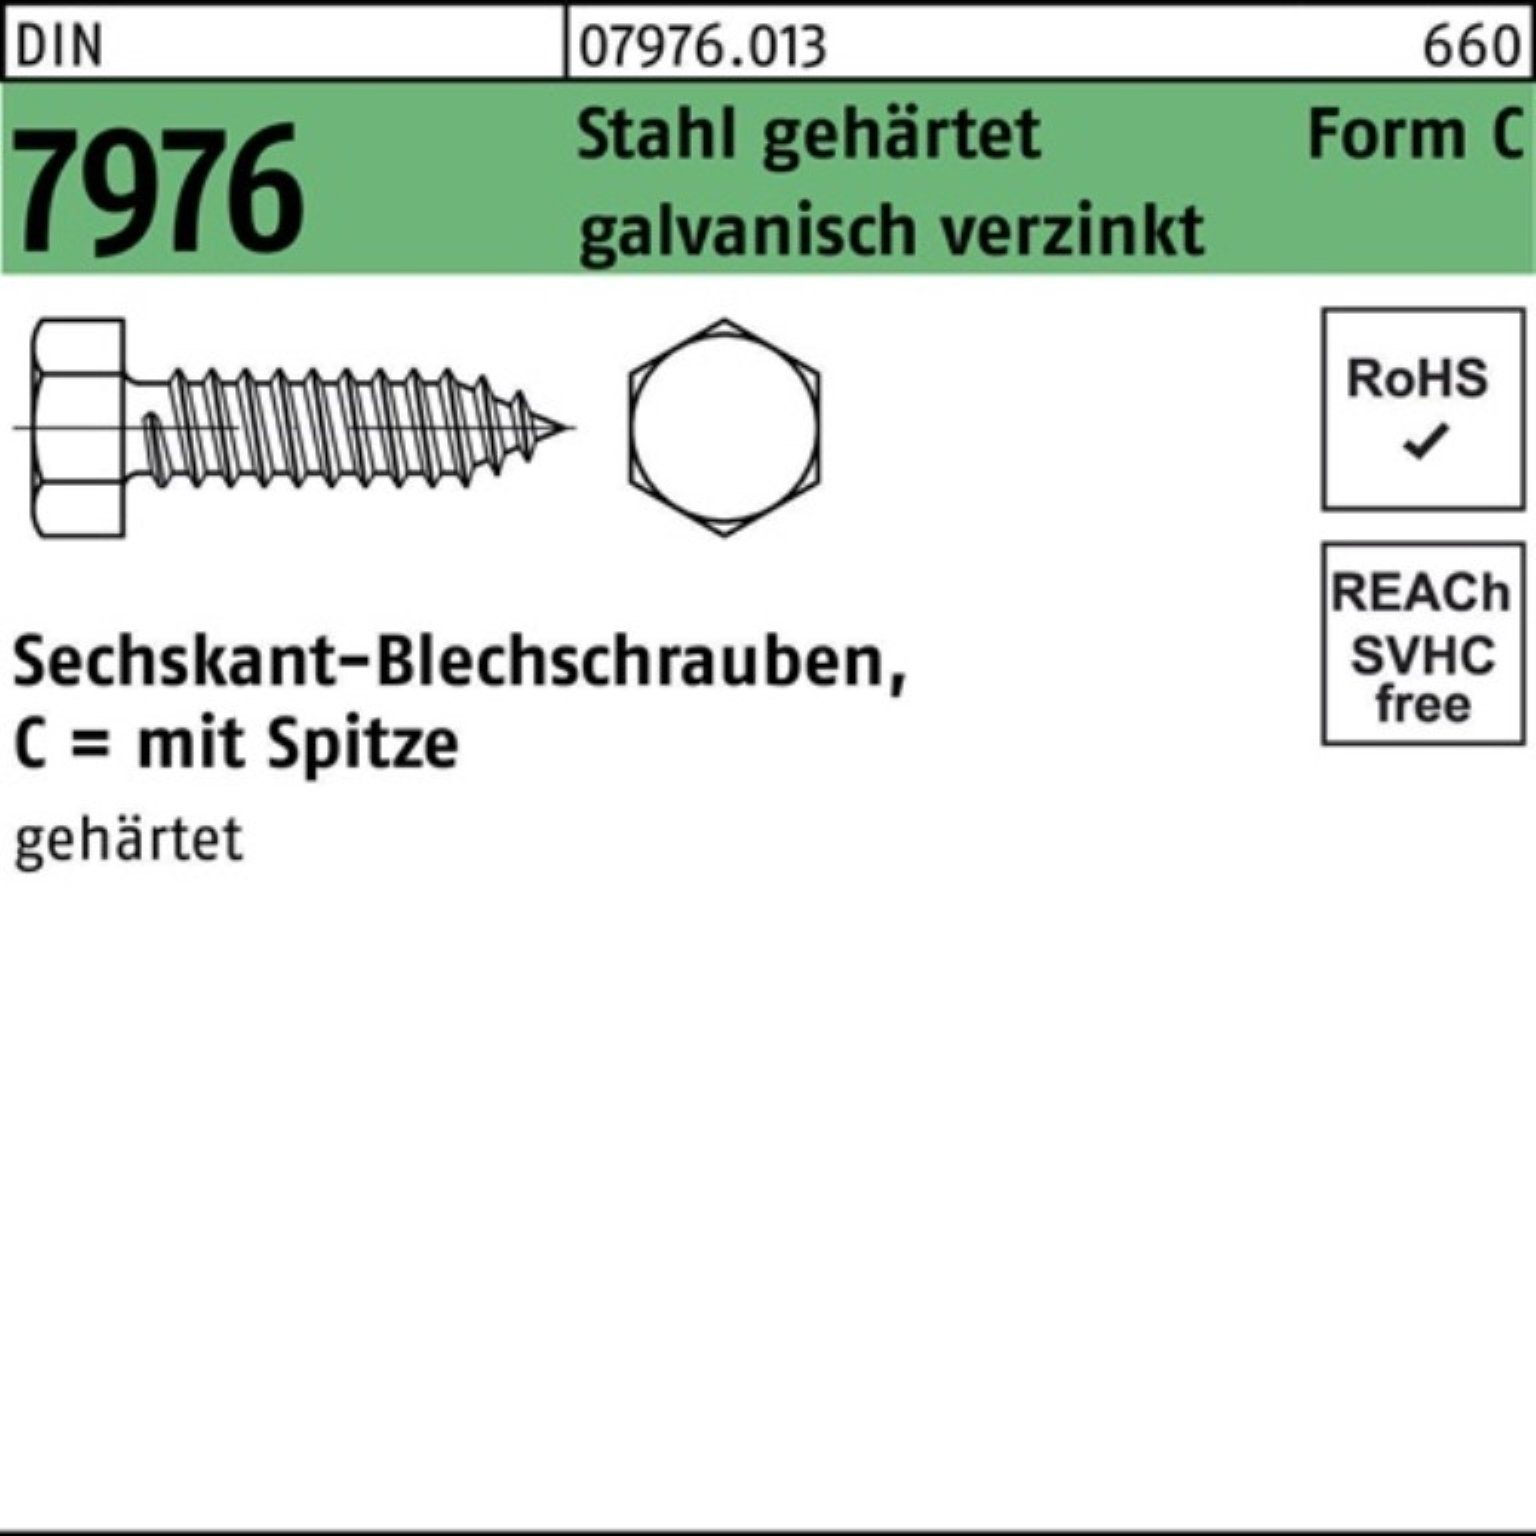 Pack 7976 Reyher Blechschraube C Blechschraube Stahl Sechskant/Spitze DIN 1000er geh 3,5x13